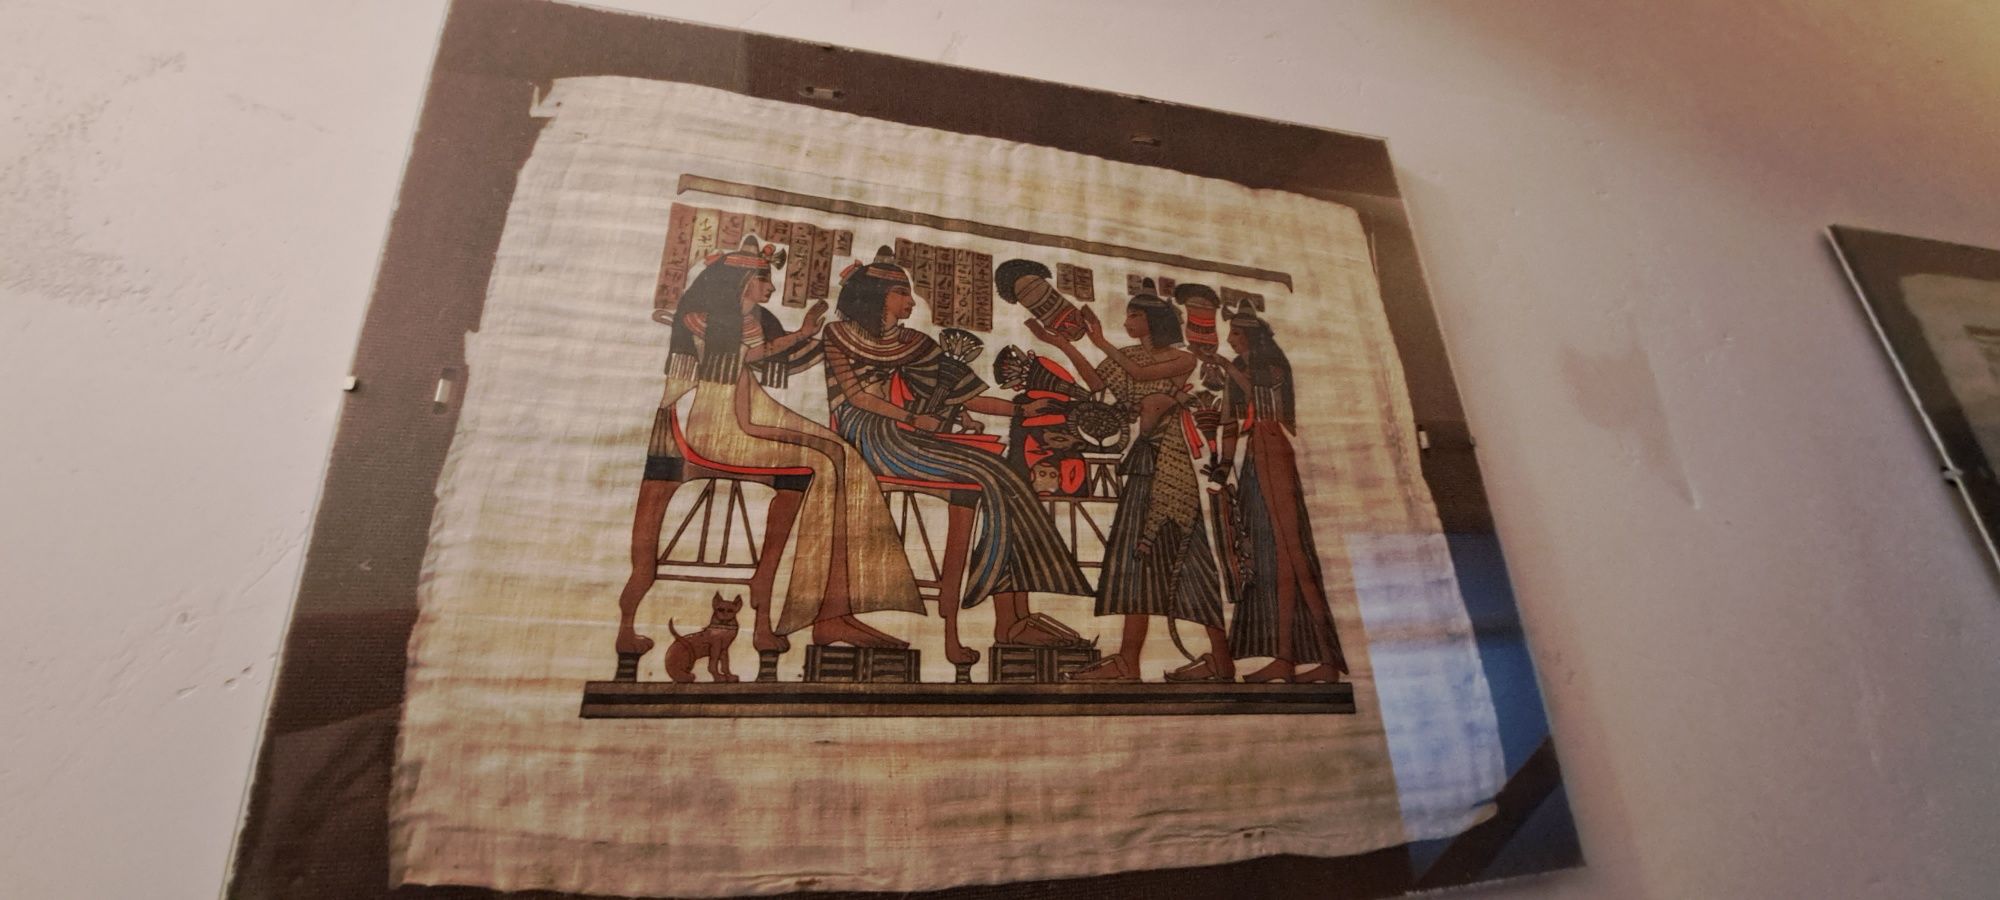 Egipt obraz papirus wystrój obrazki różne